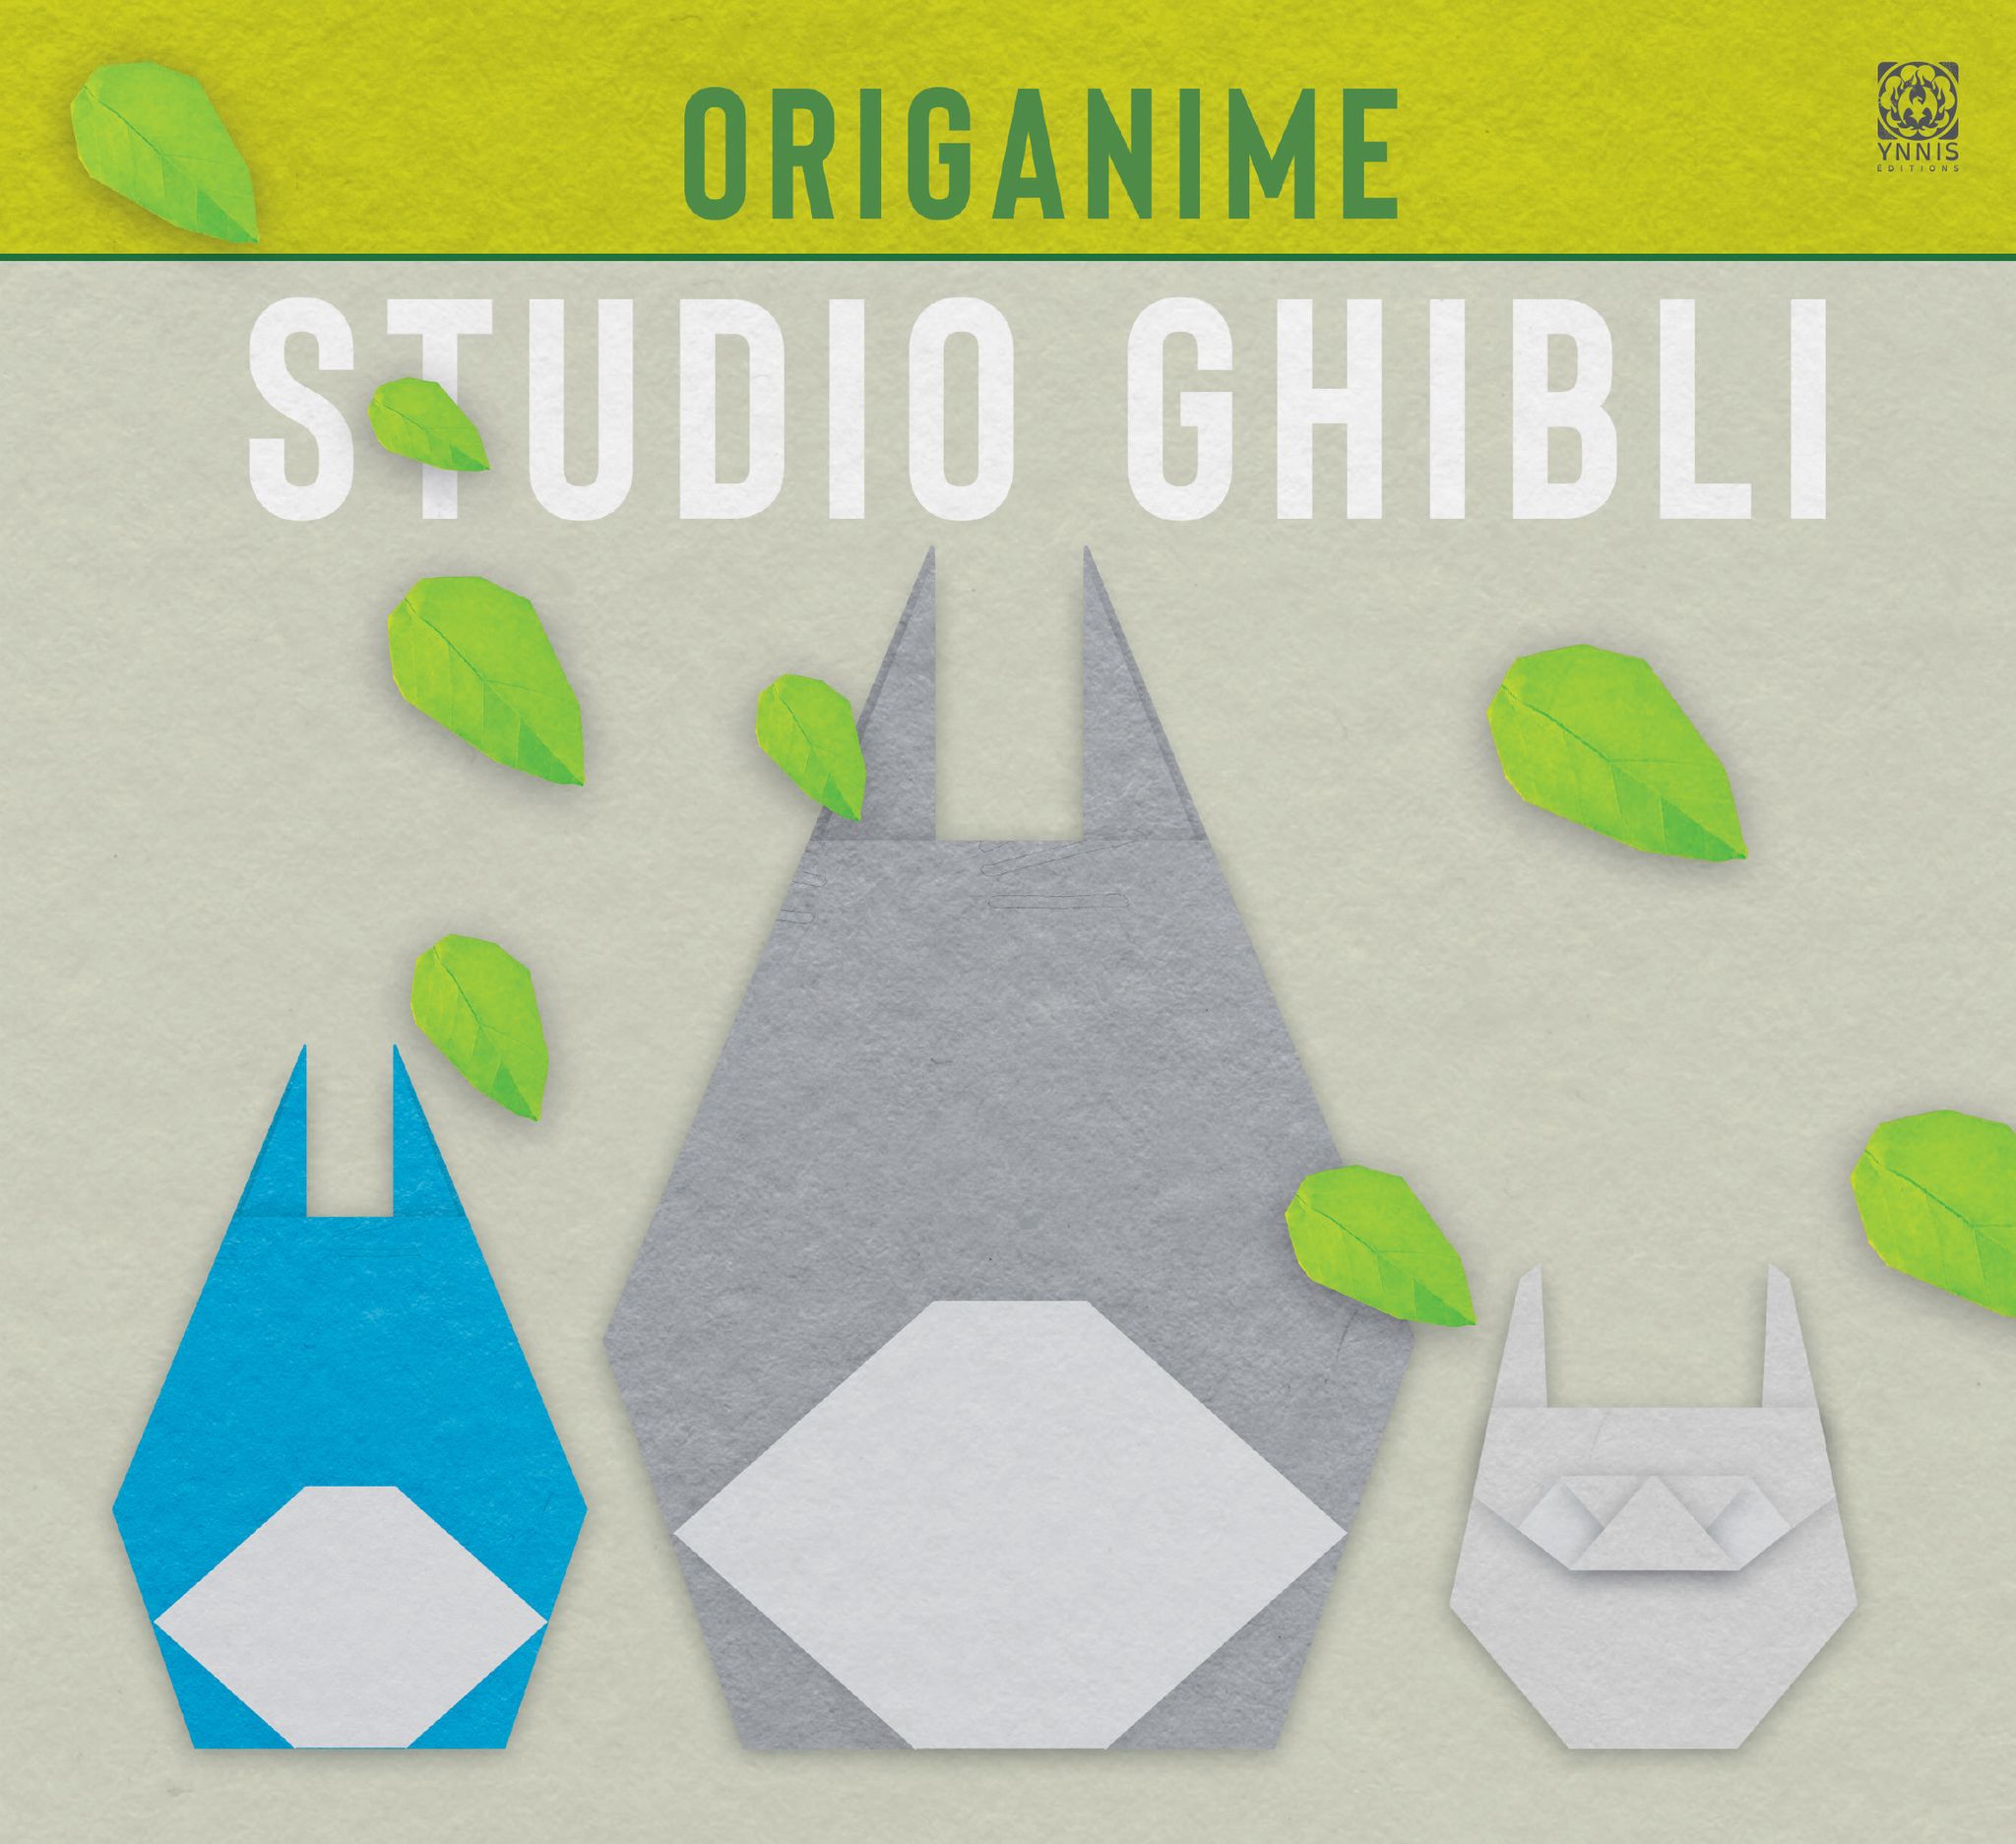 Le livre Origanime Studio Ghibli est disponible chez Ynnis Éditions